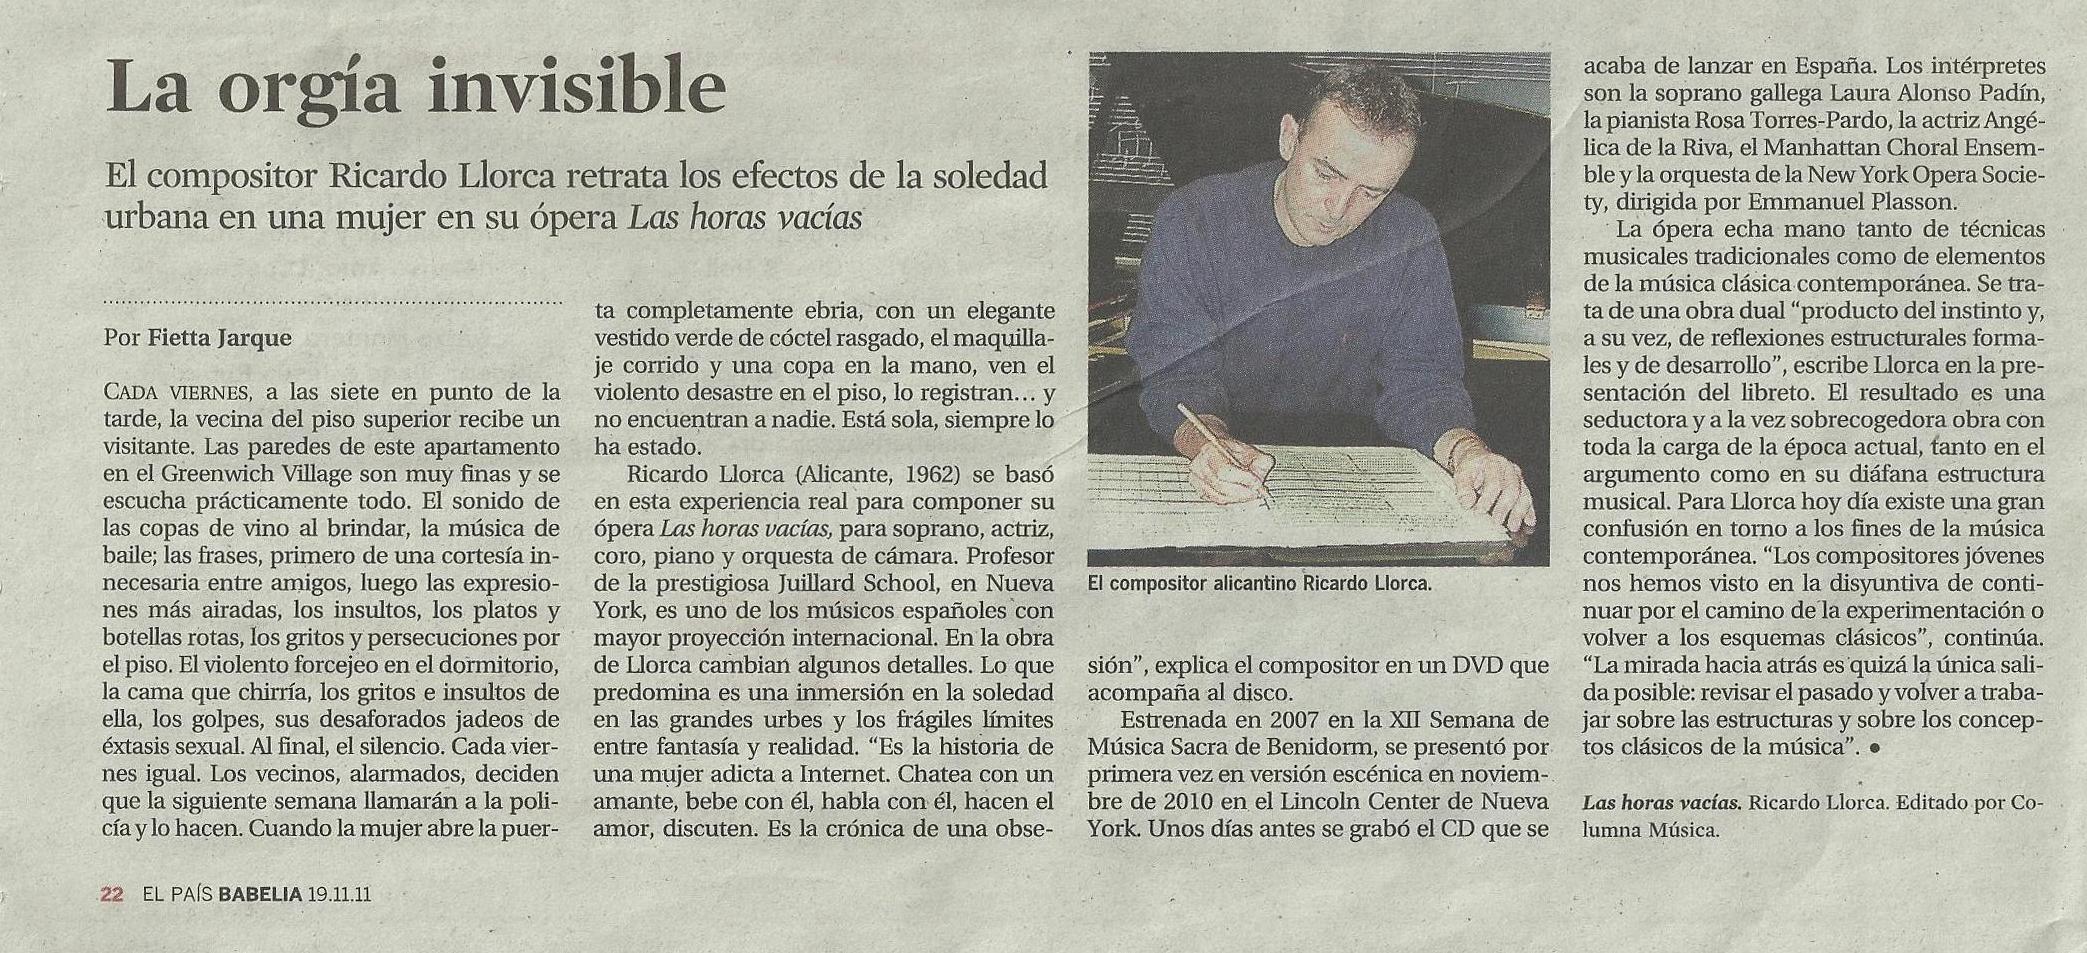 Ricardo LLorca. La orgía invisible. Crítica de La Horas vacías. El País/ Babelia (19 de Noviembre de 2011)